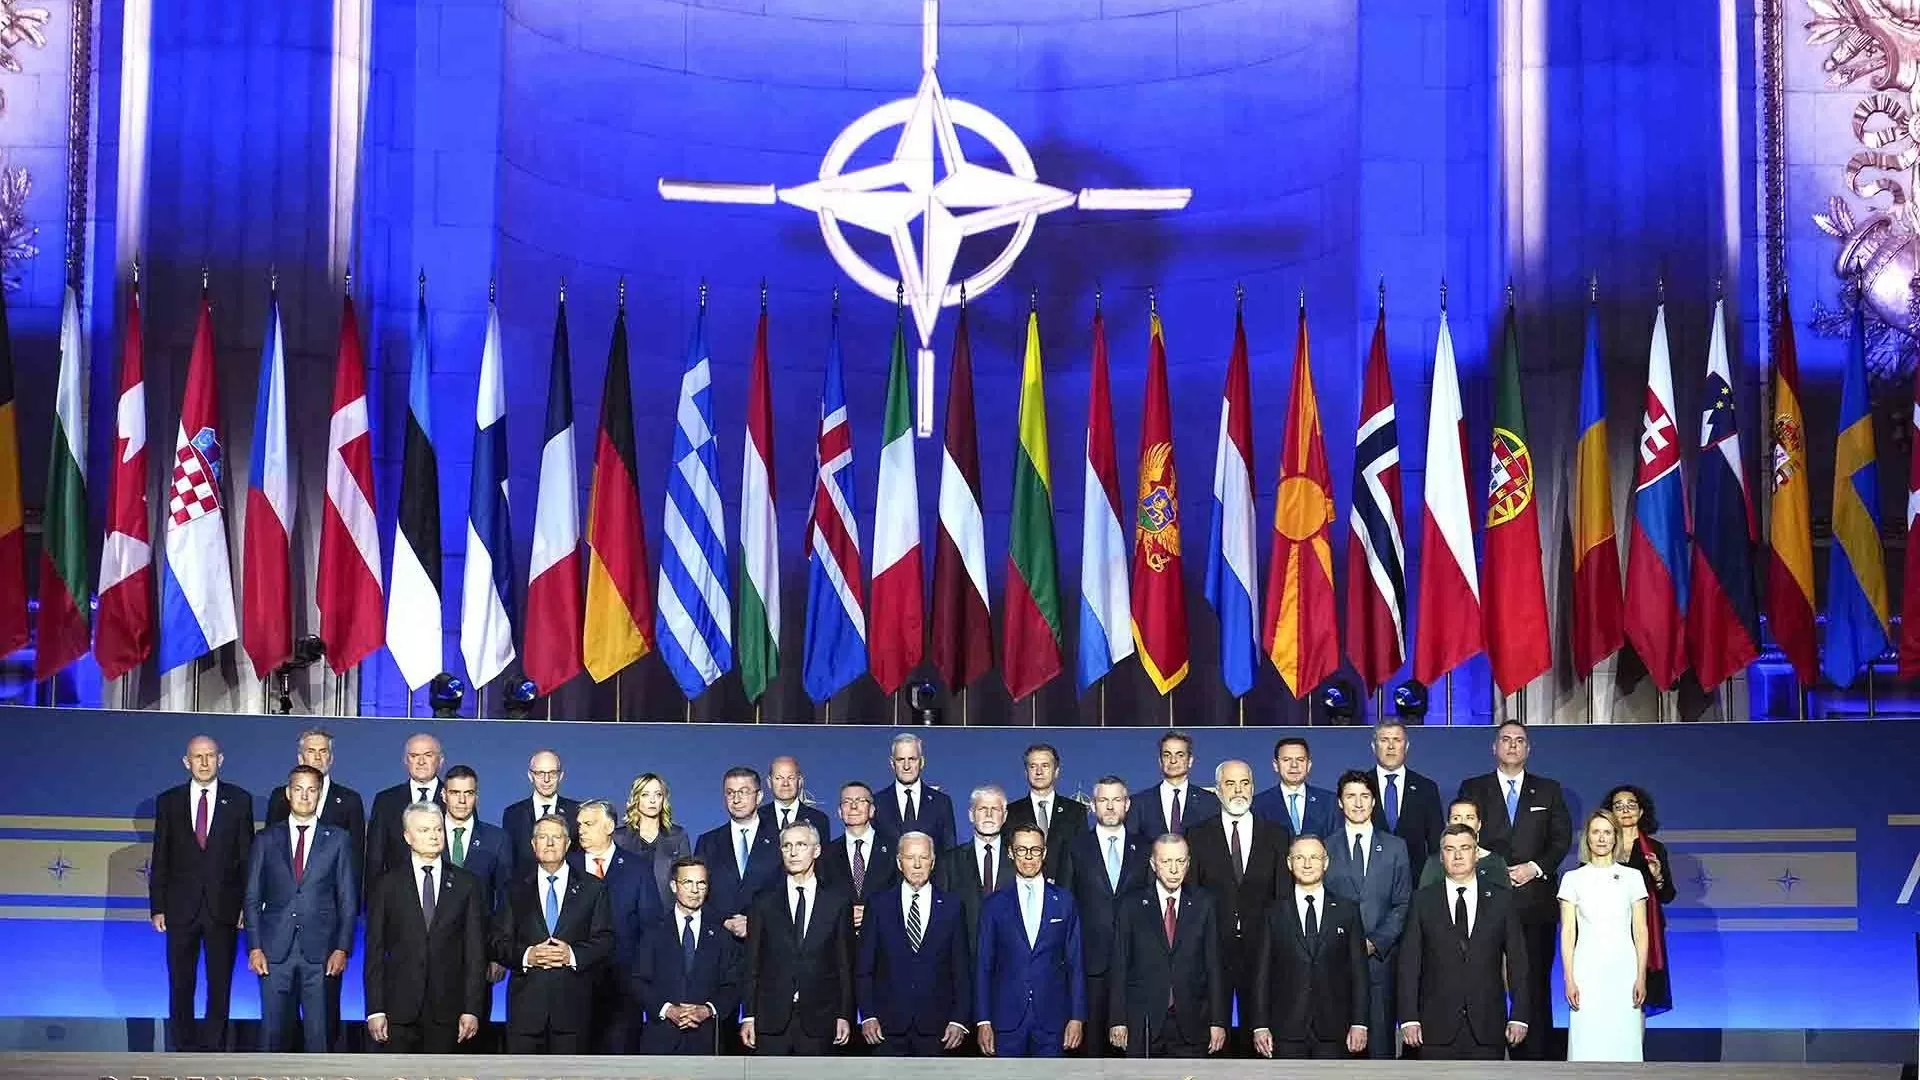 Điểm nhấn từ Thượng đỉnh NATO